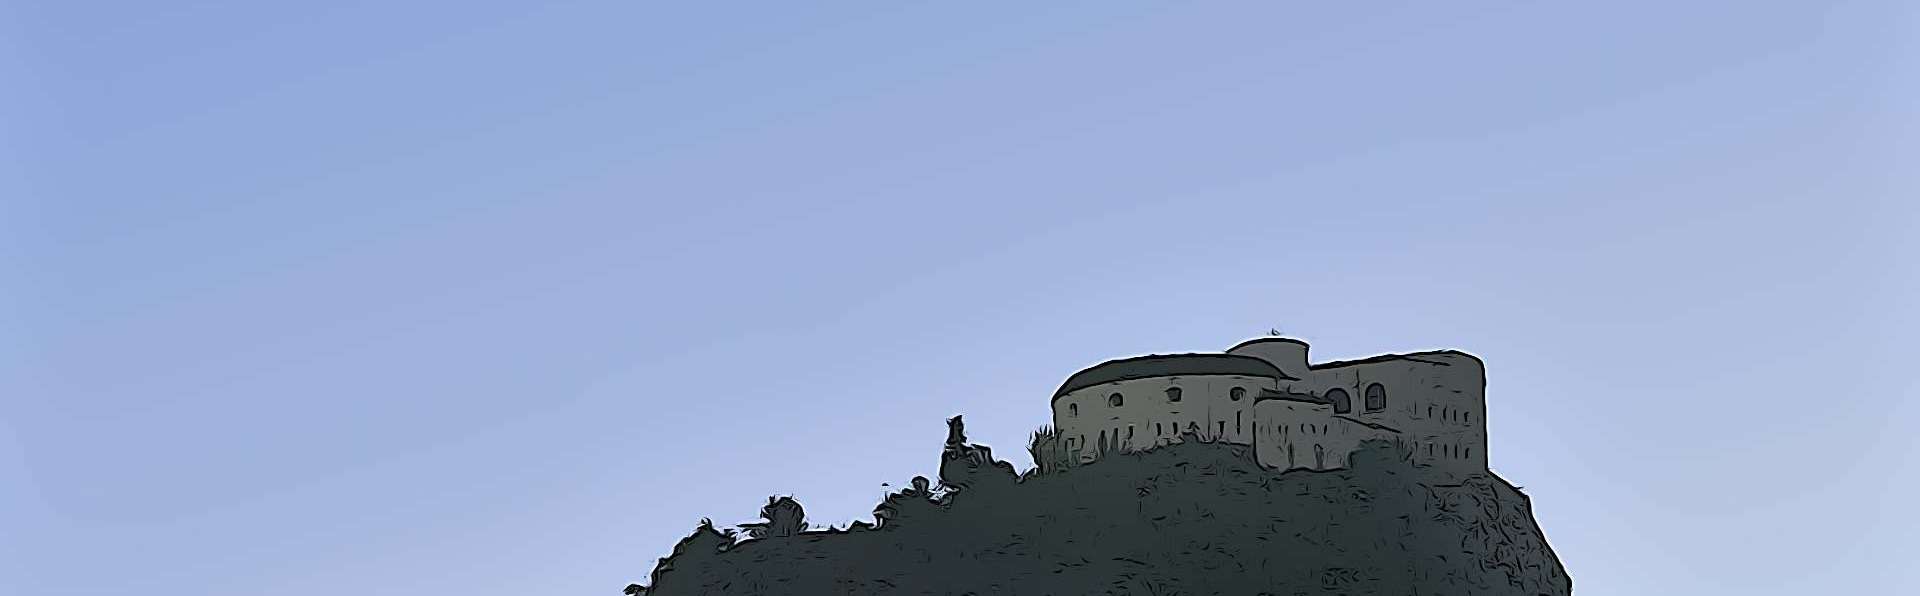 Rivoli Veronese Fort